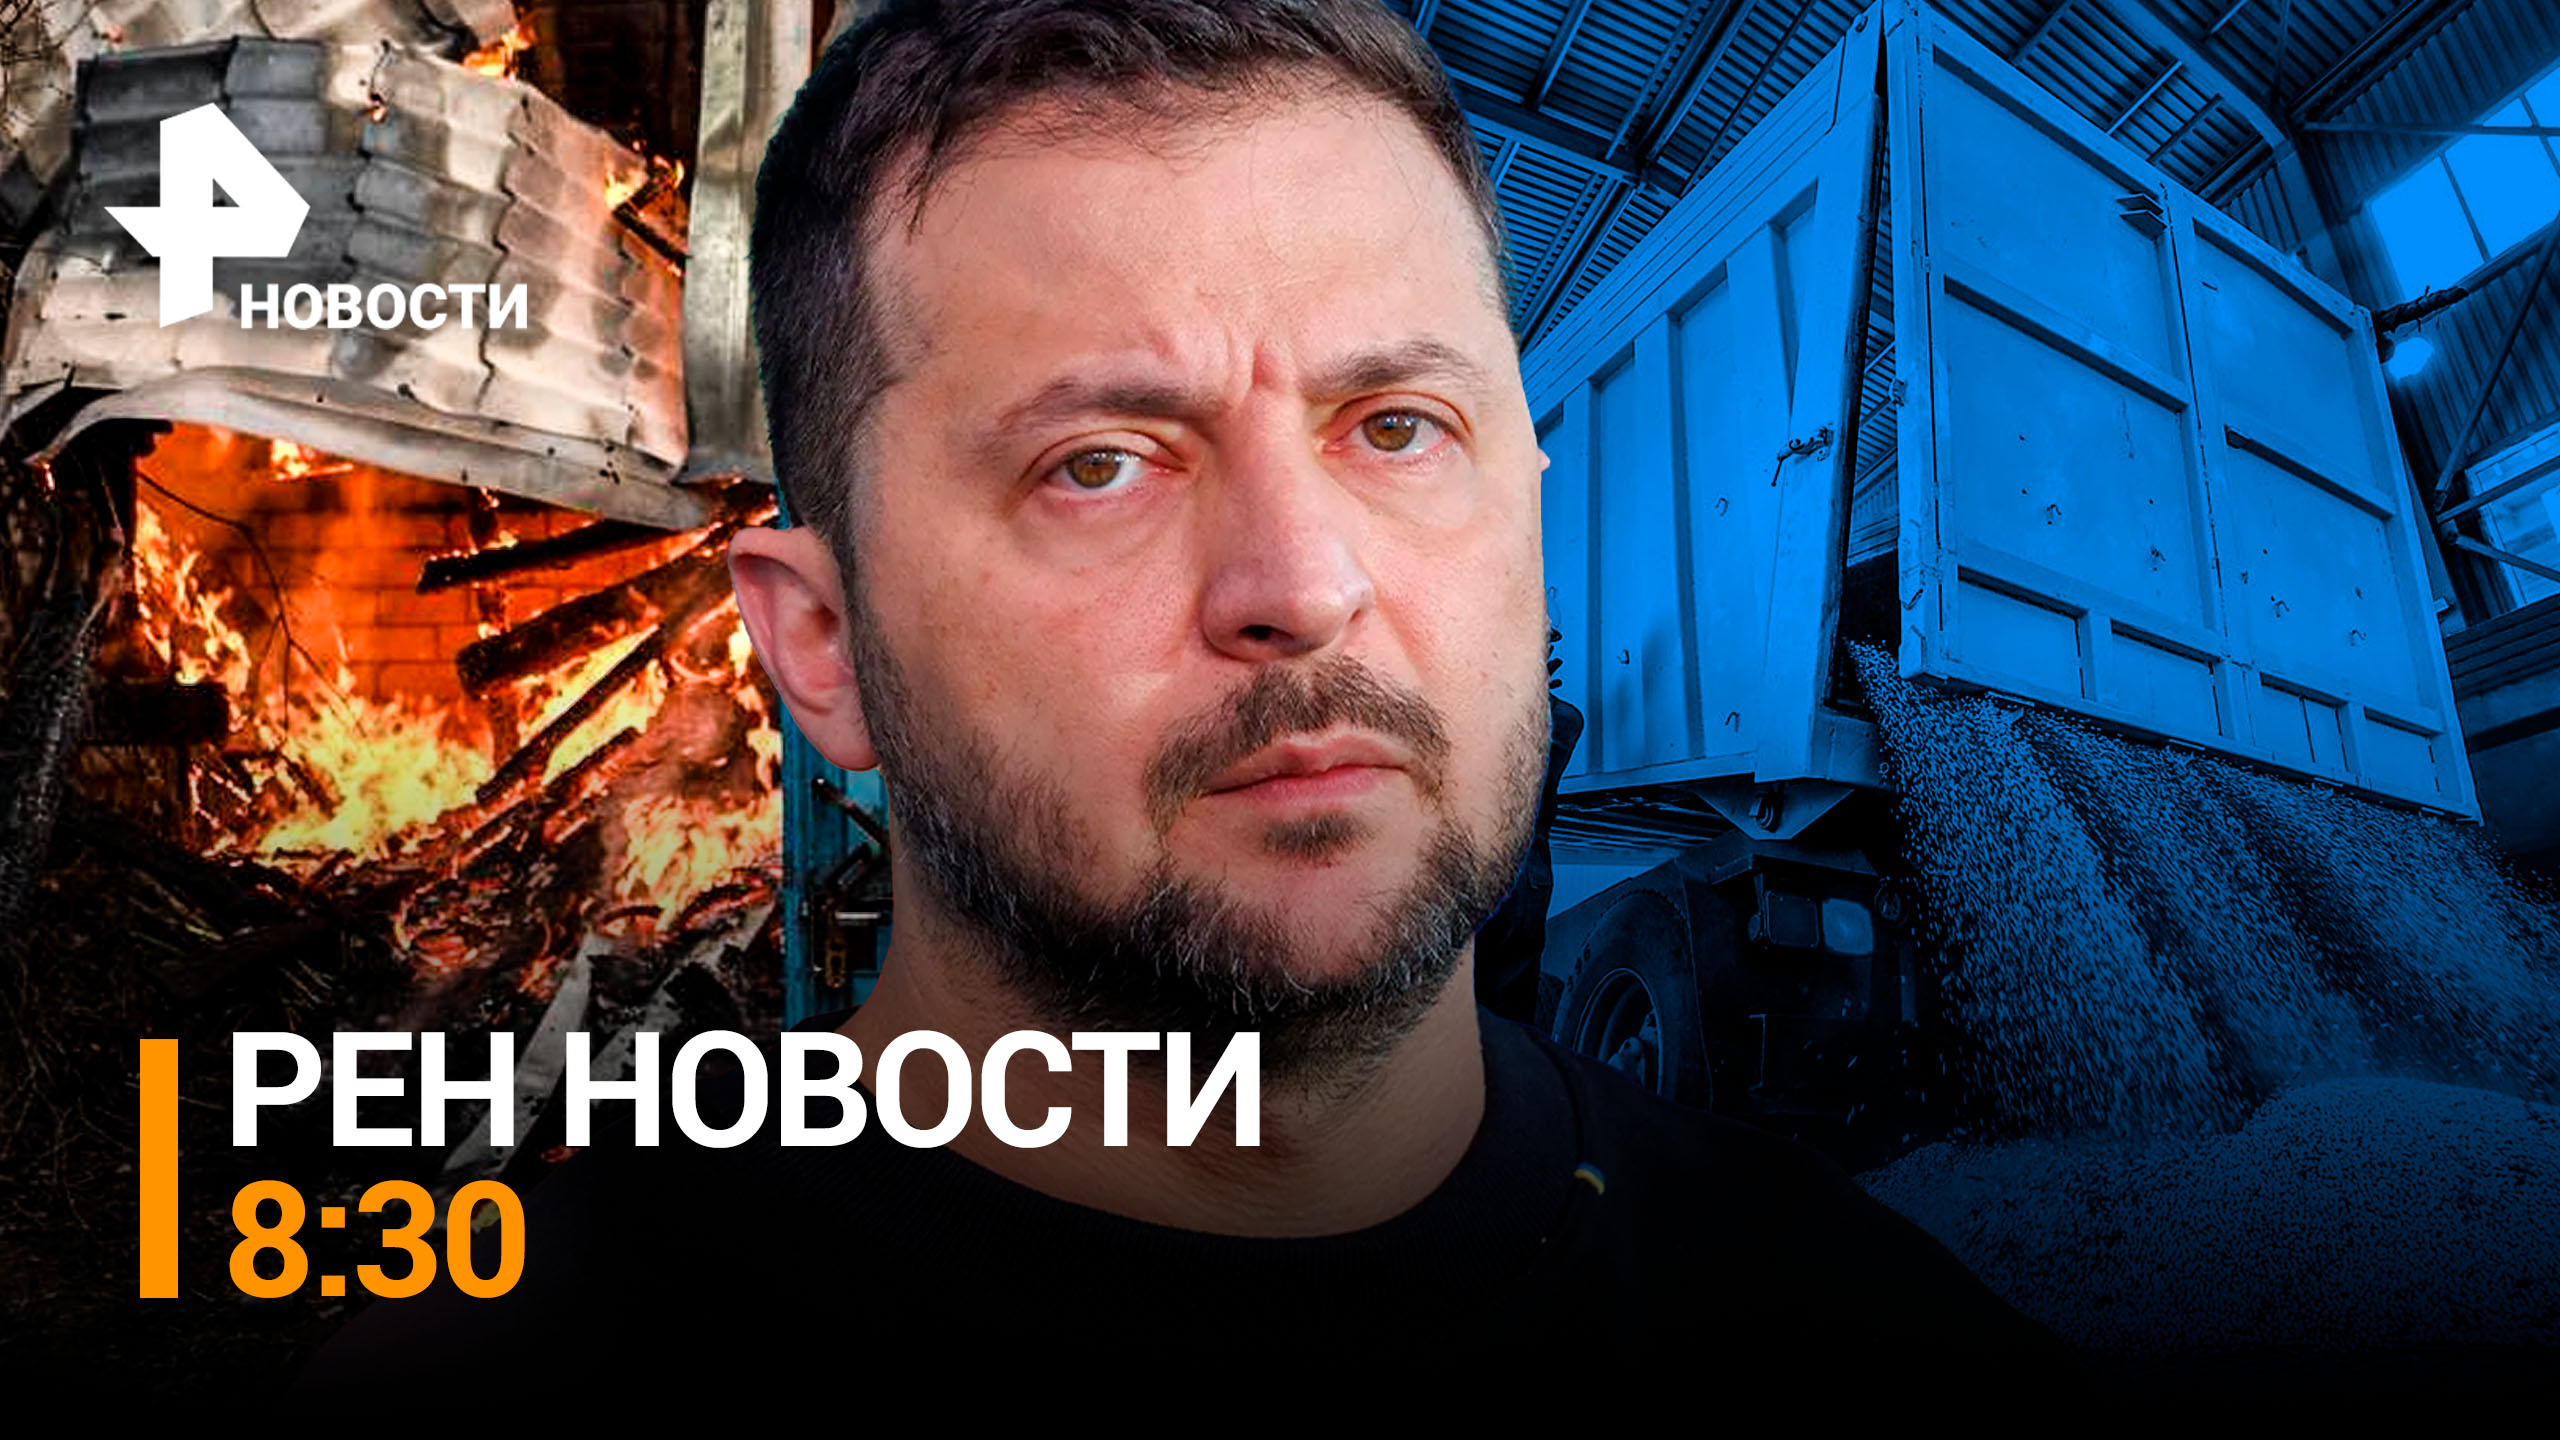 Чудовищный удар по Белгороду: украинские боевики атаковали жилые районы / РЕН Новости 8:30, 22.03